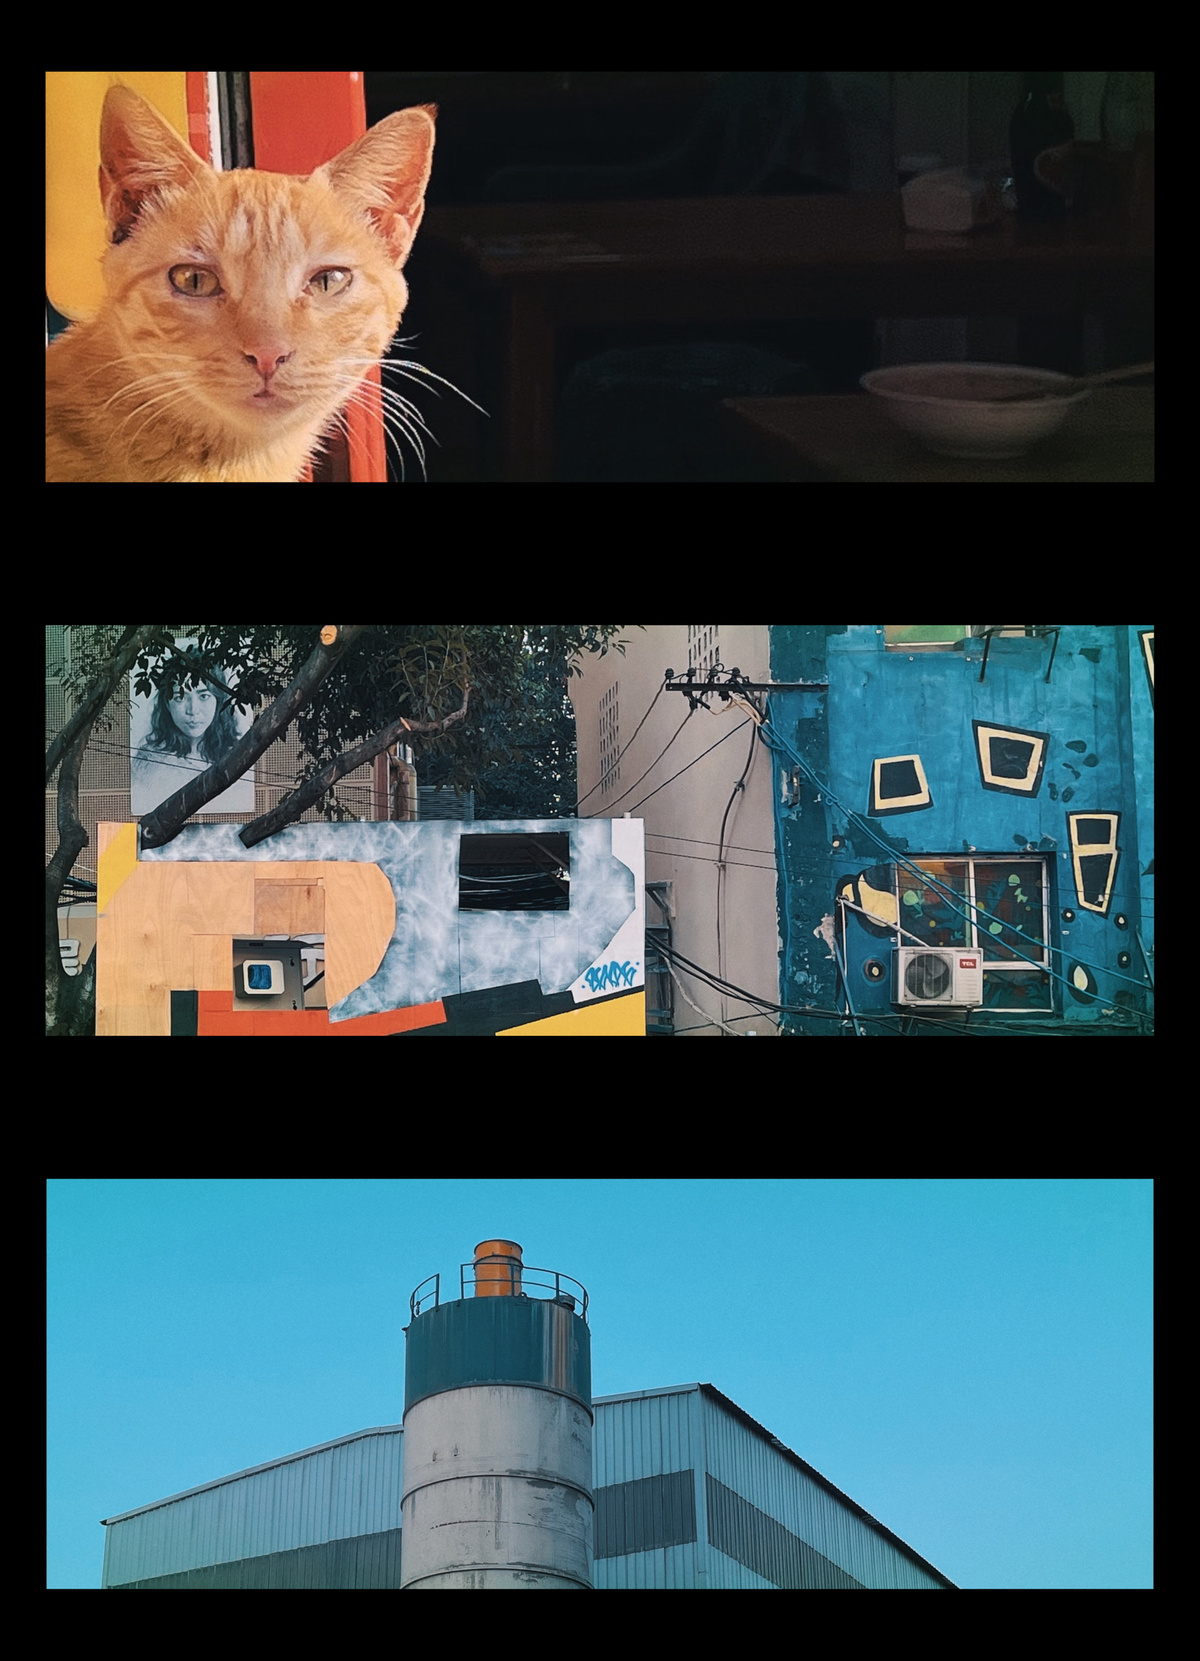 一系列照片展示了一只橙色猫和工业建筑。